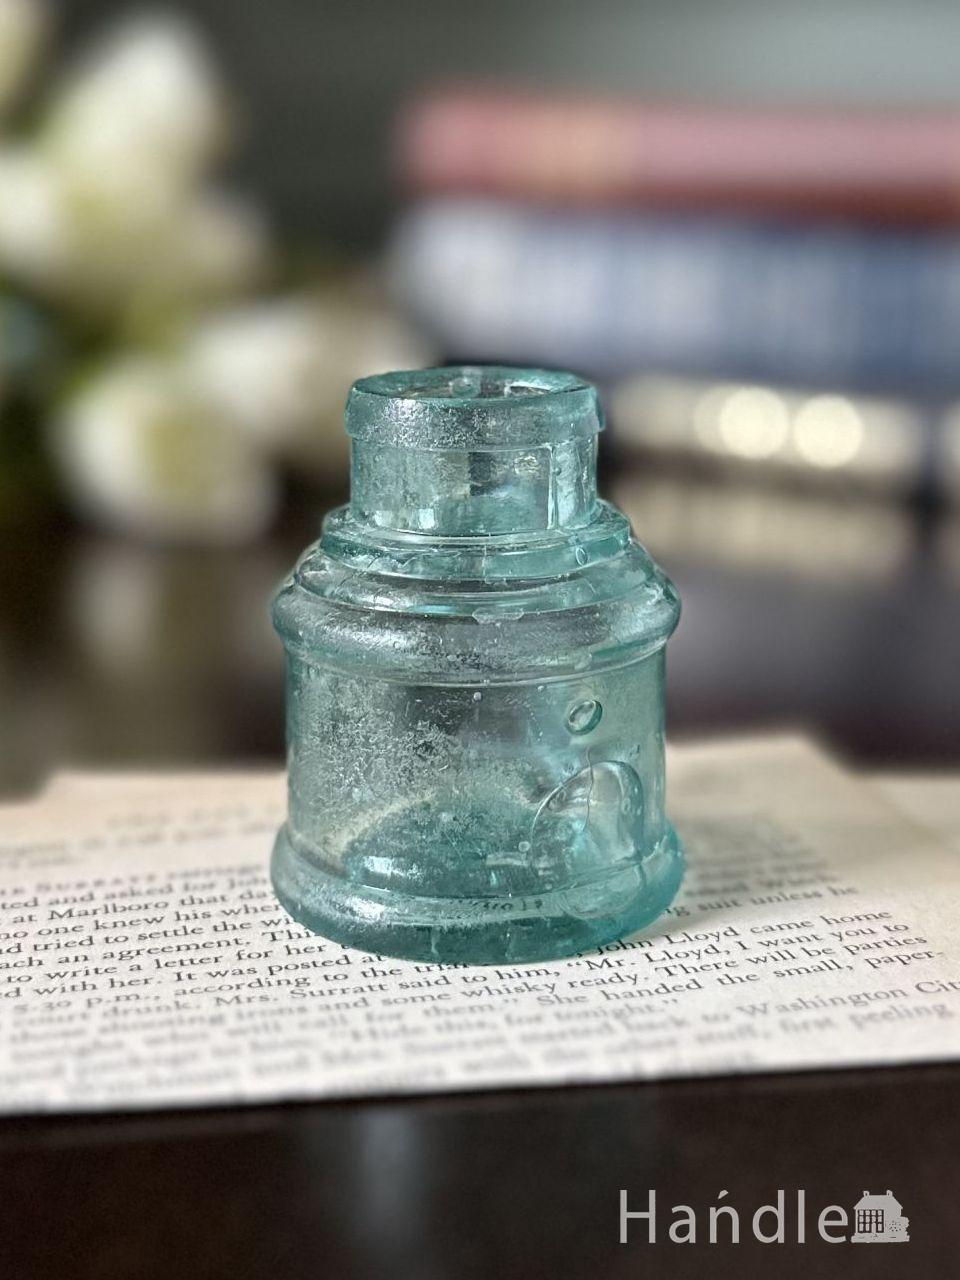 アンティークガラスのおしゃれな雑貨、丸い形のヴィクトリアンインク瓶 (d-1906-z)